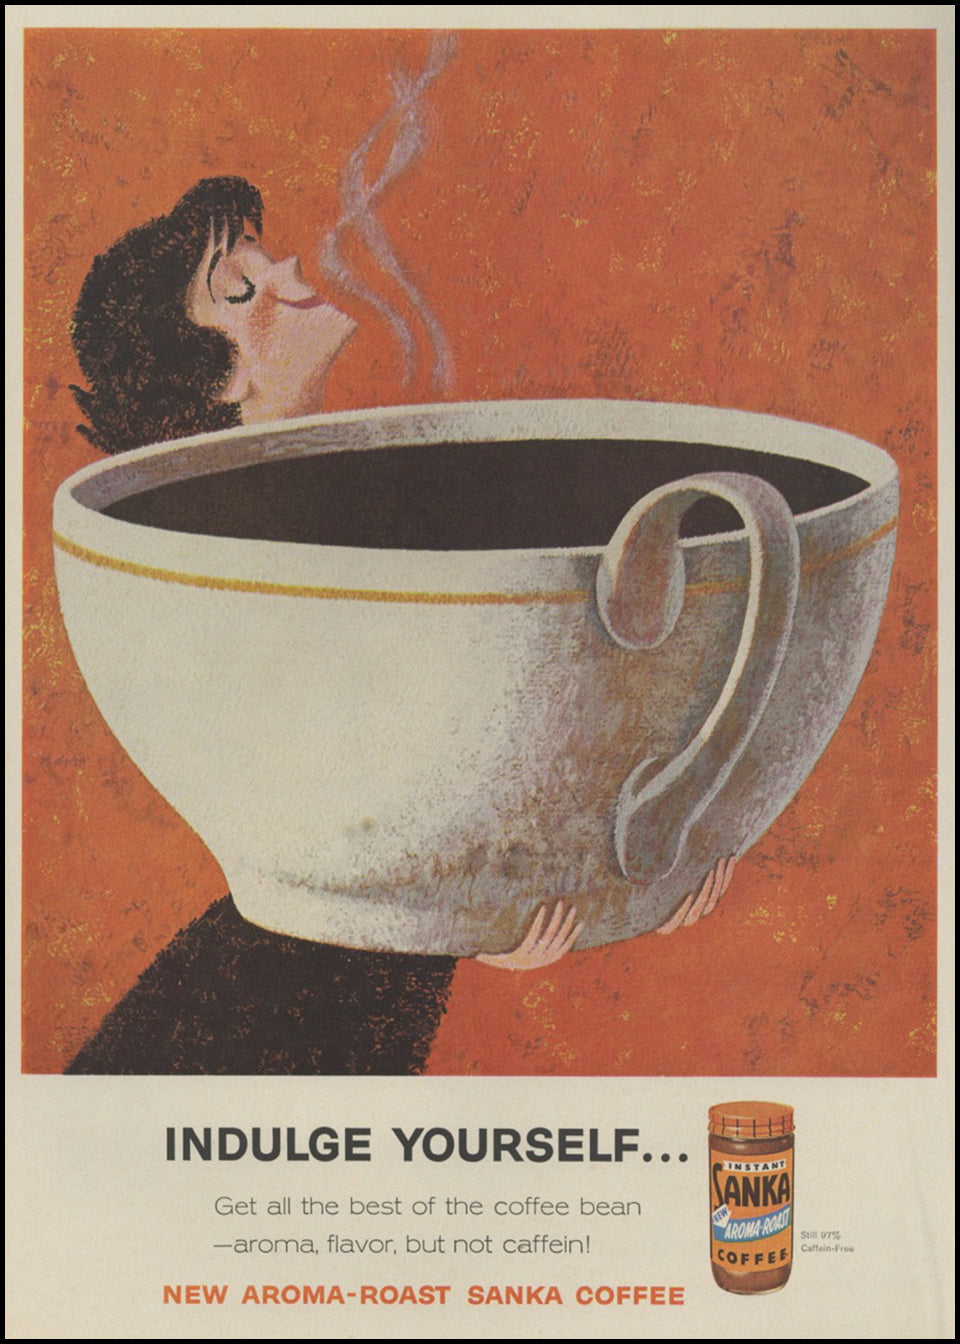 Original & Authentic Vintage Coffee & Tea Ads at Adirondack Retro